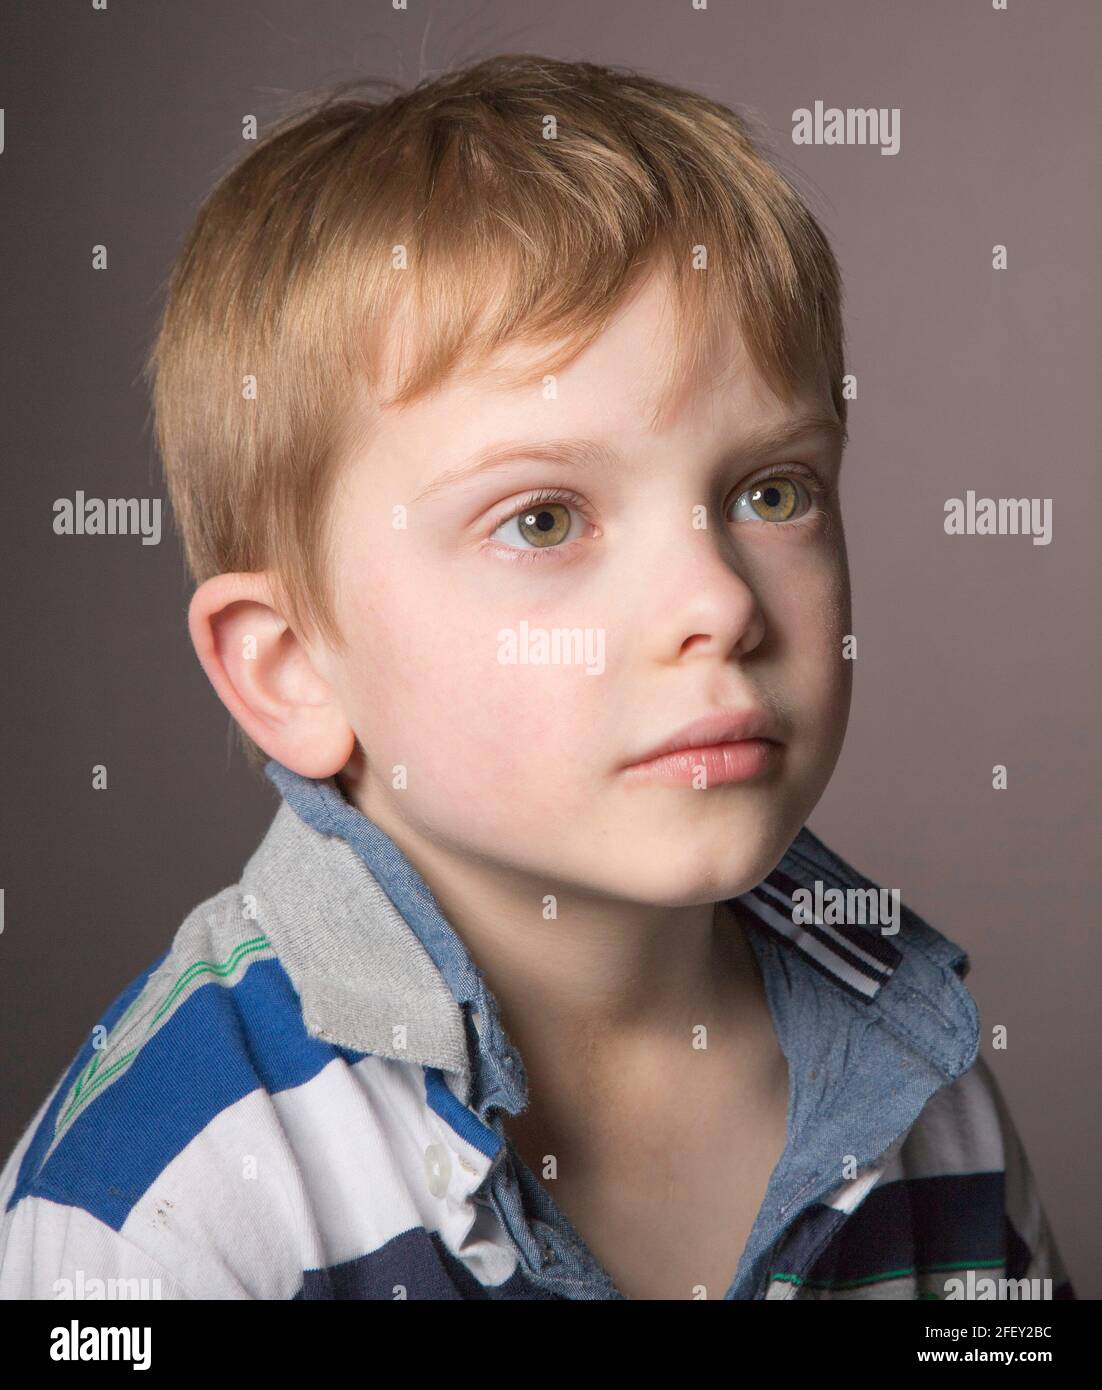 Kleiner Junge Porträt Stockfoto